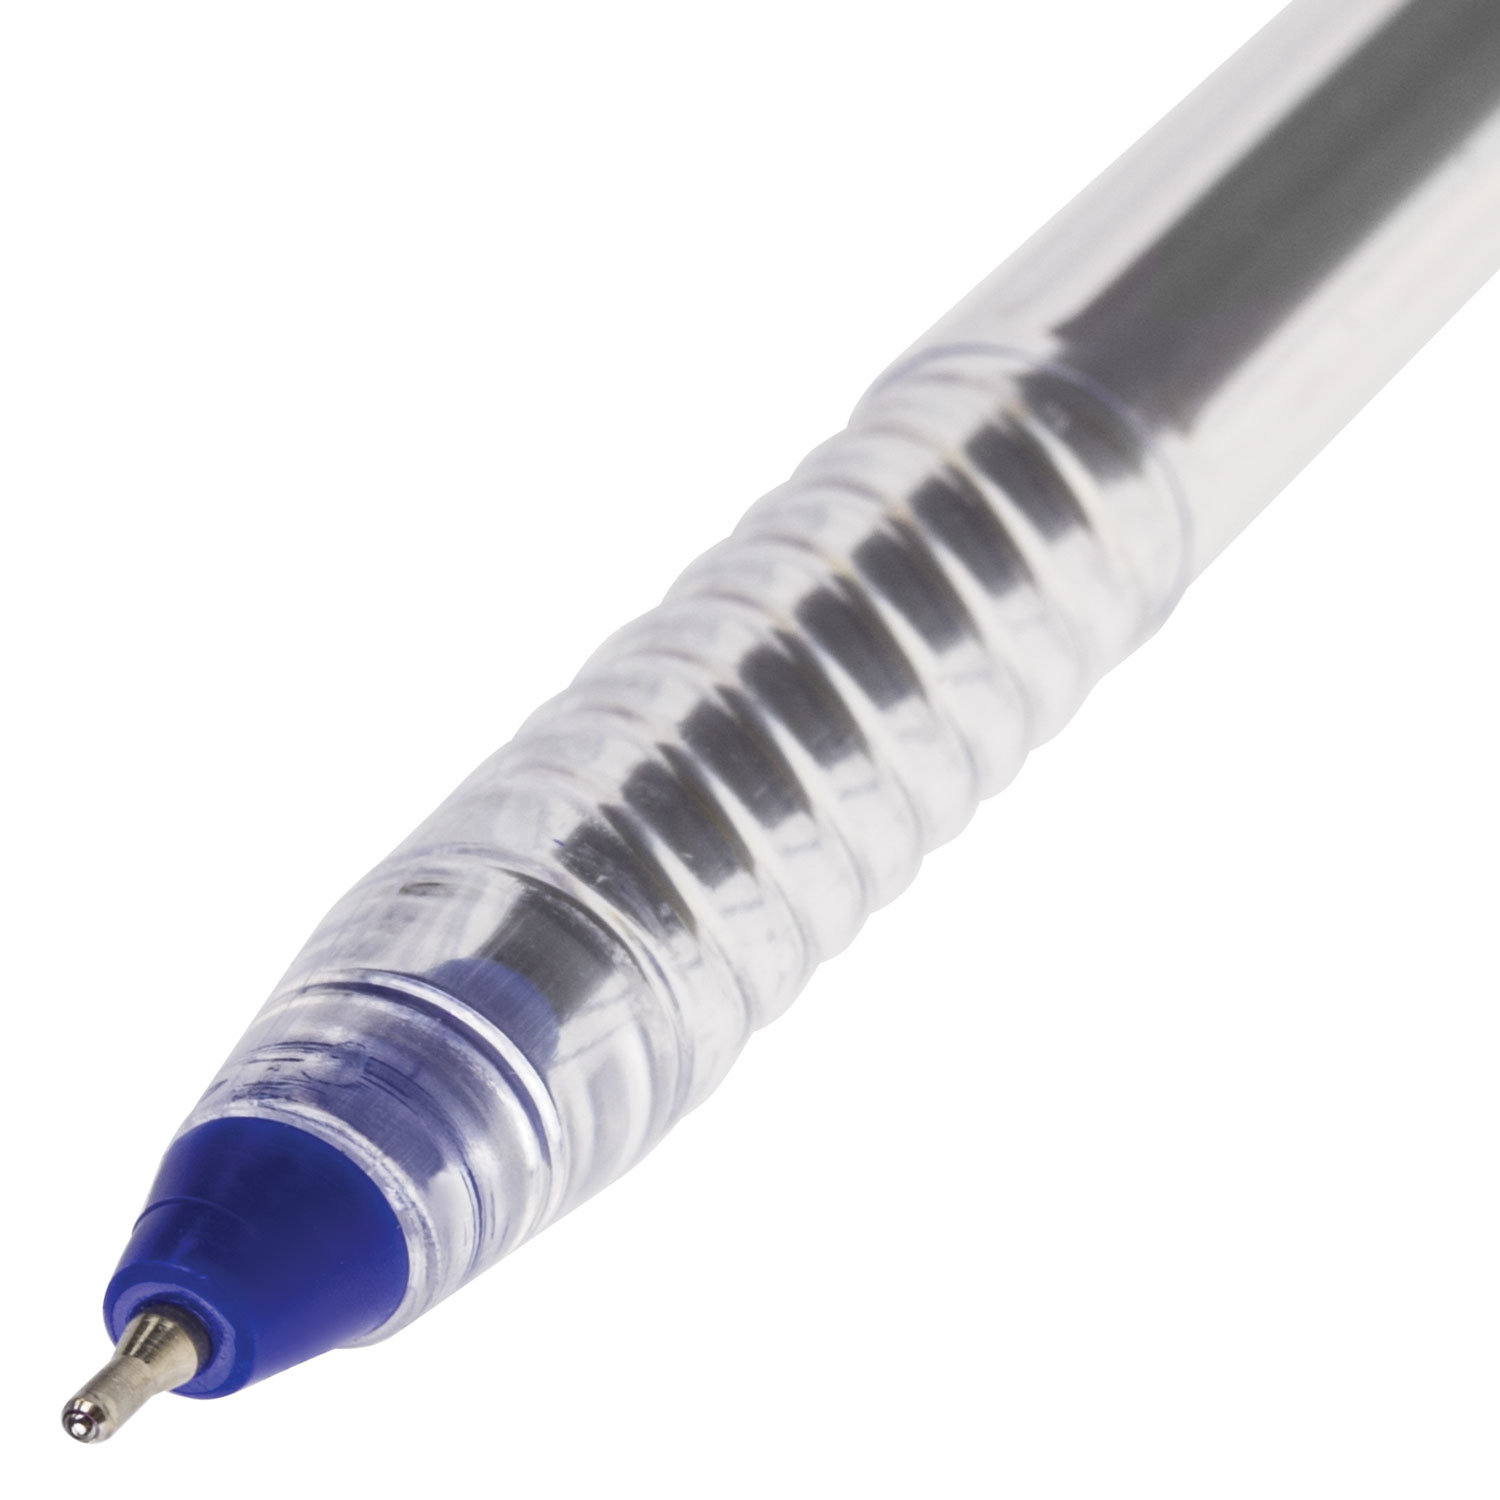 Ручка шариковая STAFF на масляной основе, корпус прозрачный, 141705, синяя